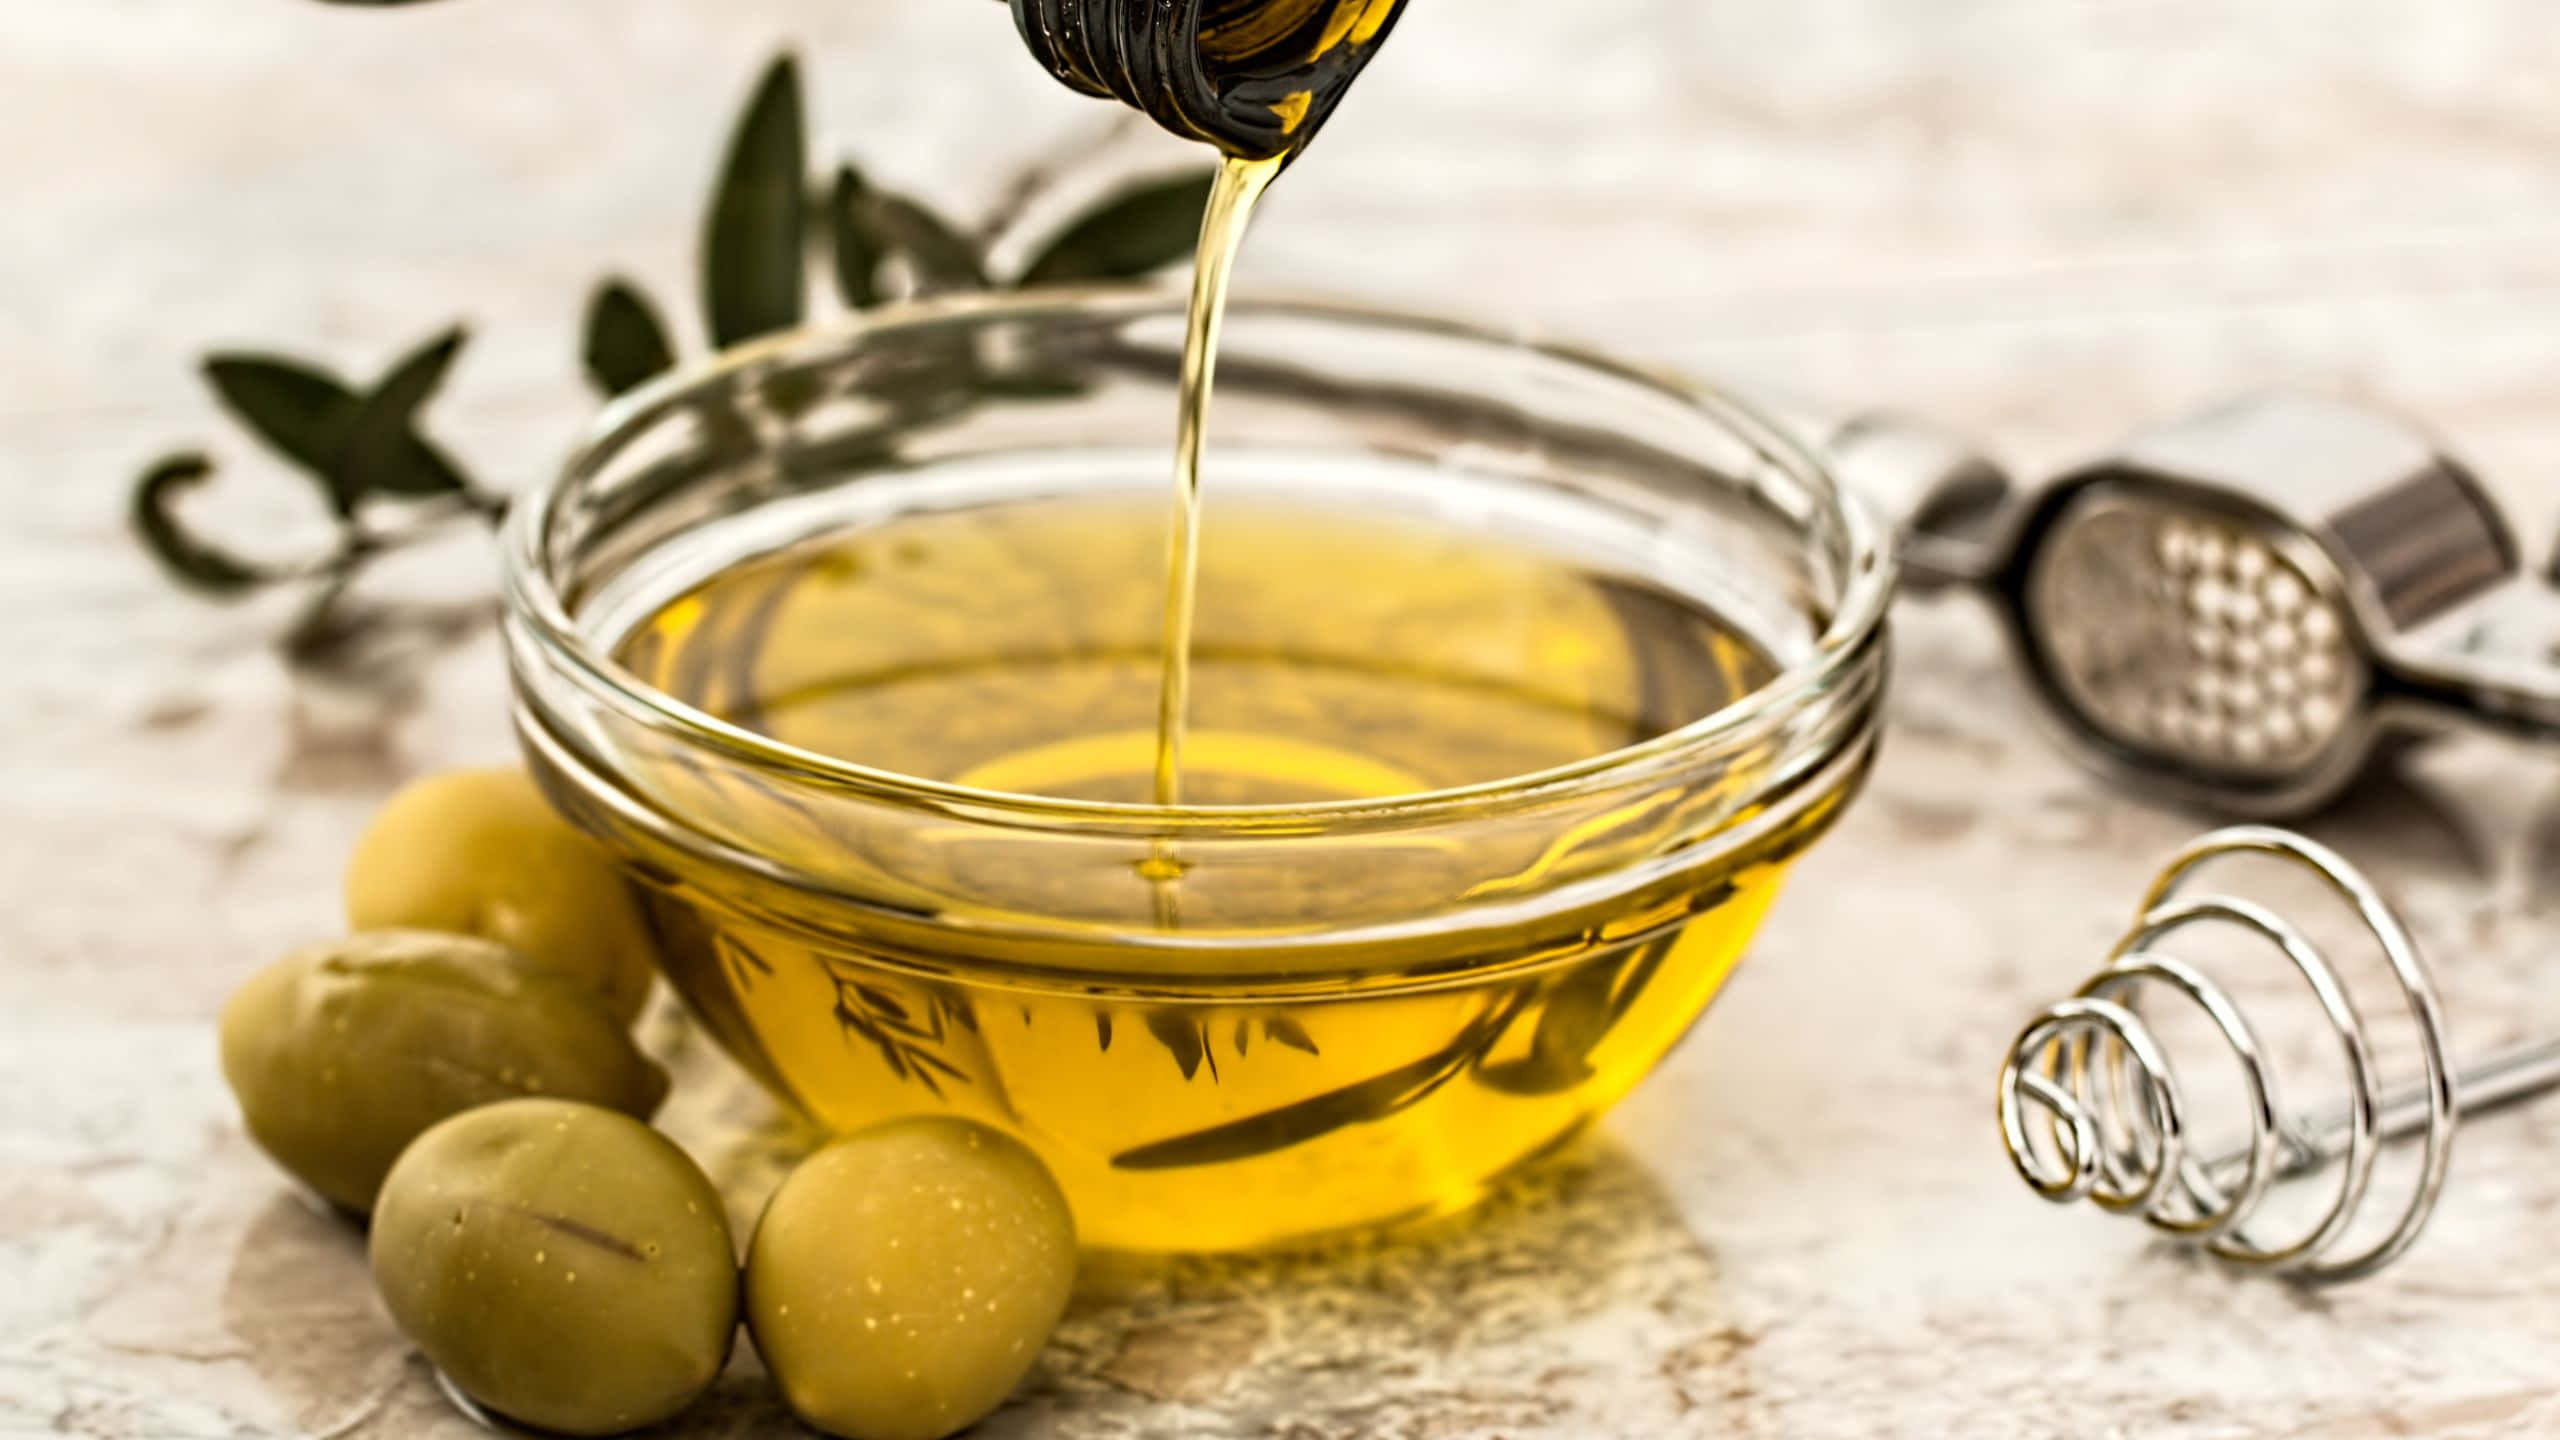 Olivenölwird In Eine Schüssel Mit Oliven Gegossen.